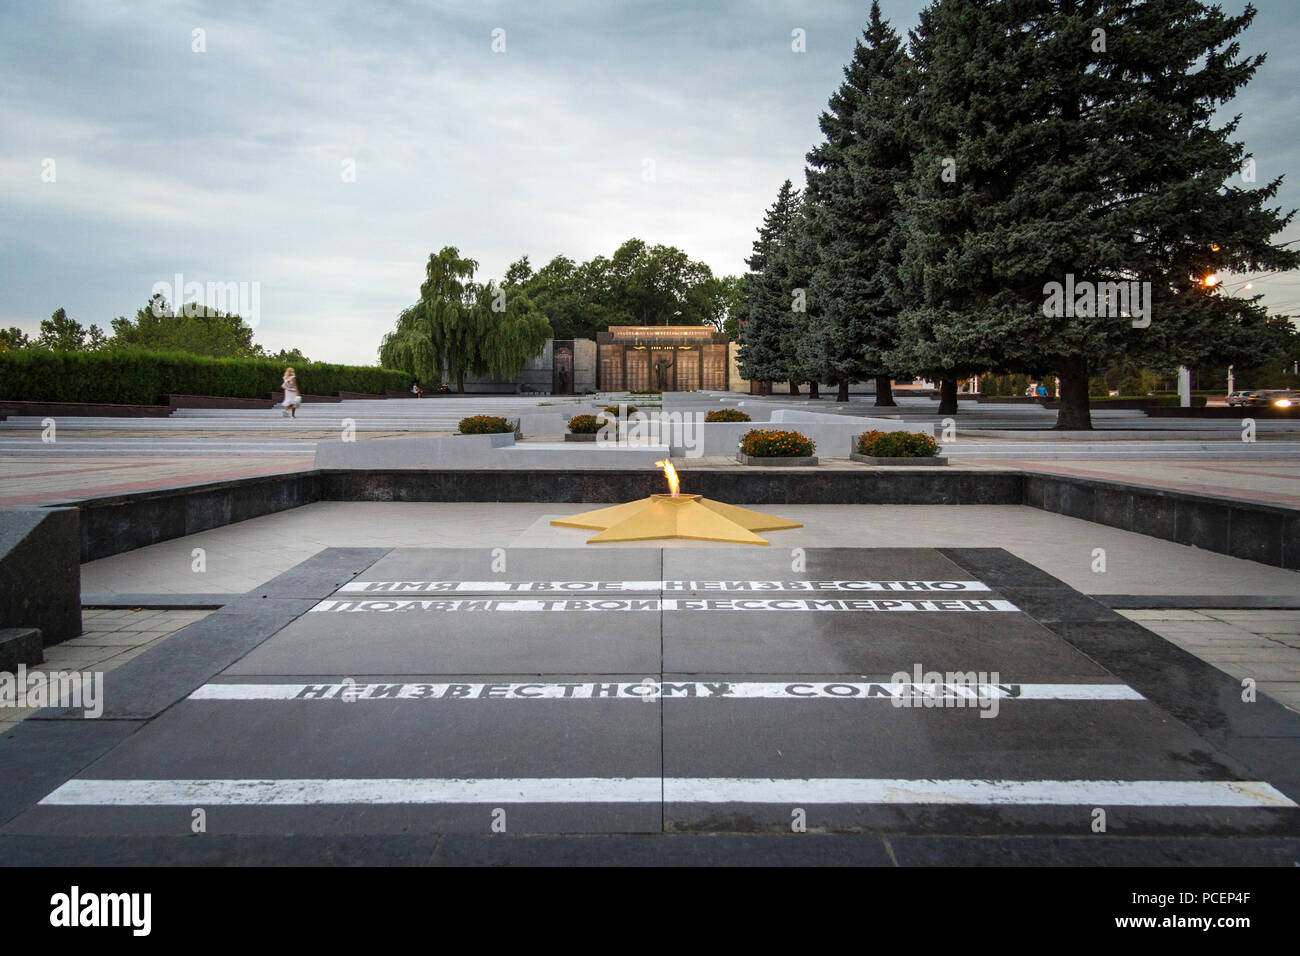 TIRASPOL, TRANSNITRIA (Moldavia) - Agosto 12, 2016: la fiamma eterna sul memoriale di guerra eretto per commemorare il 1990-1992 Transnitria guerra civile e th Foto Stock